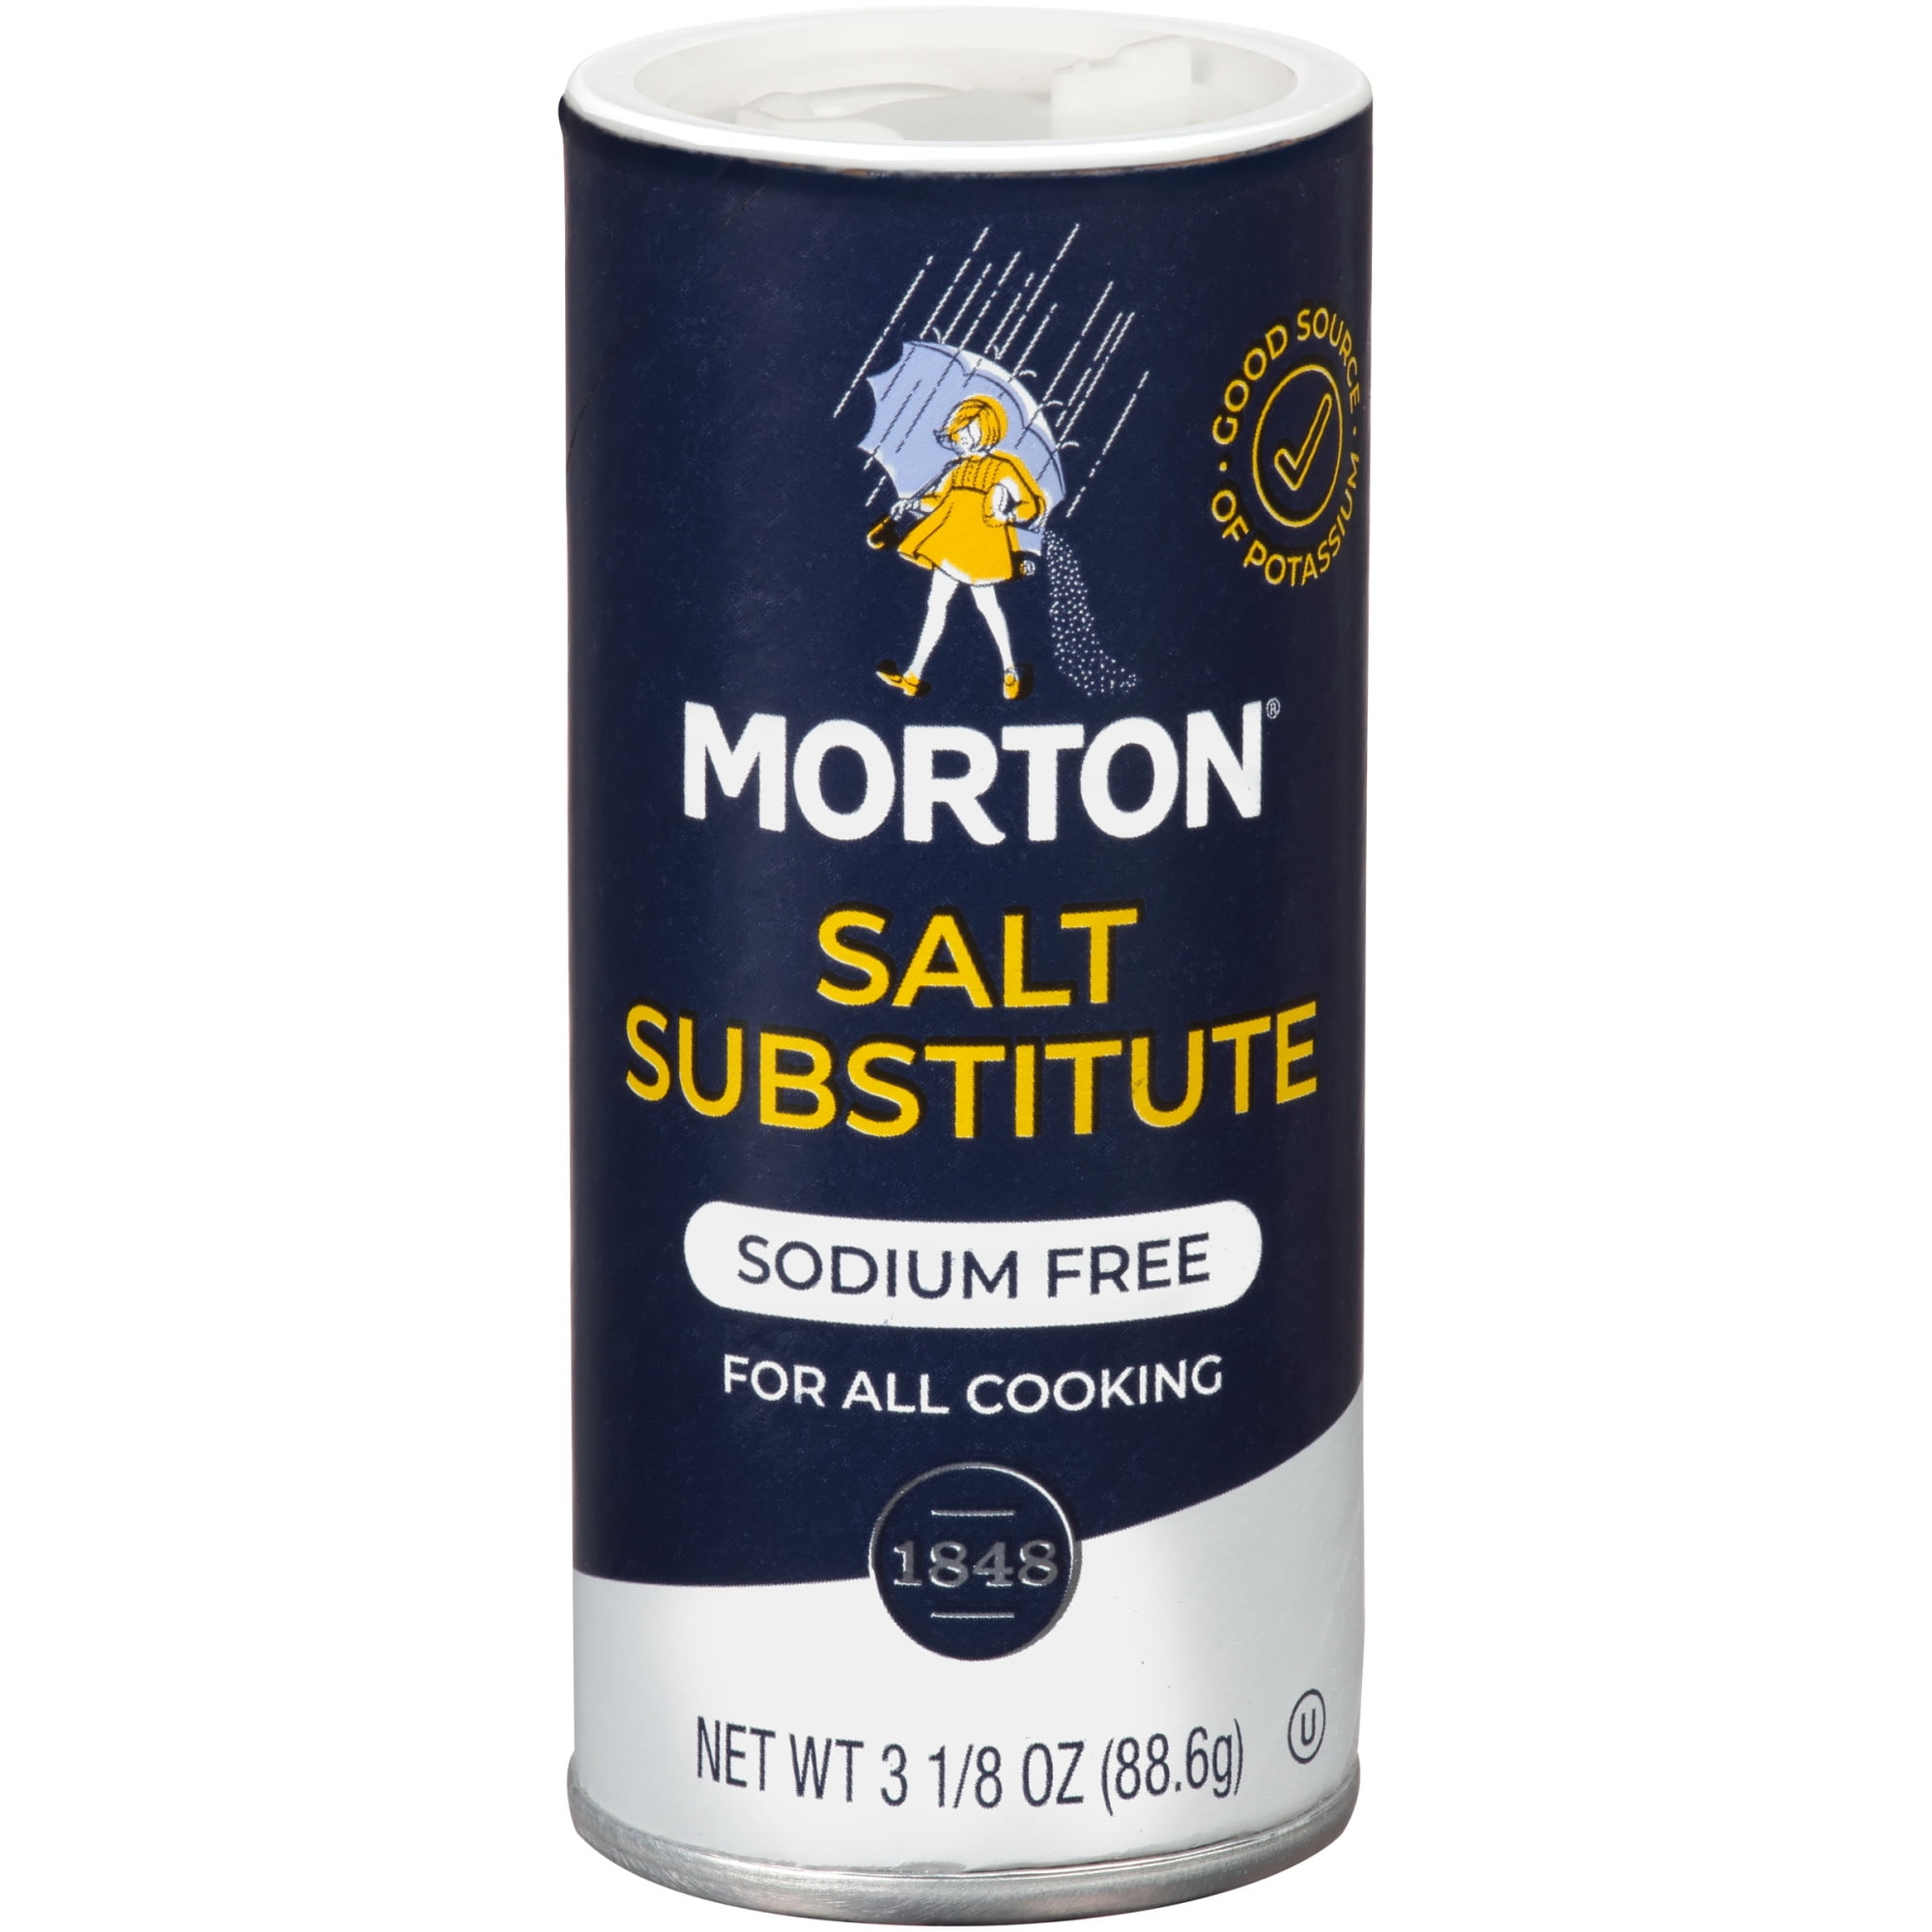 Larissa Veronica Sodium Free Salt Substitute, (4 oz, 1-Pack, Zin: 526014) 